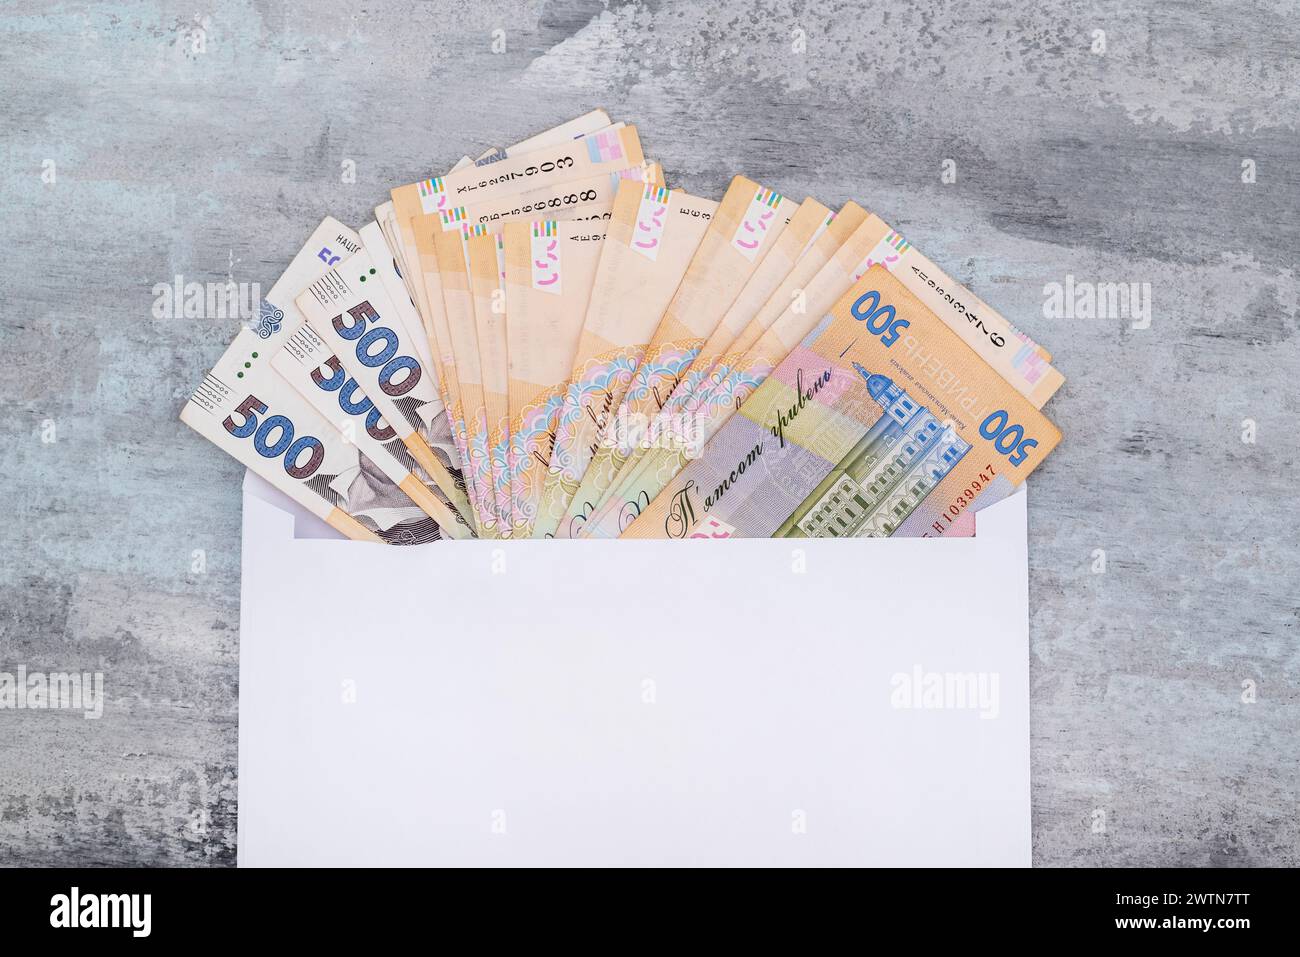 Hryvnia ukrainienne dans une enveloppe blanche sur un fond de pierre. Copie de l'espace. 500 hryvnias. Concept de paiement ou de corruption. Banque D'Images